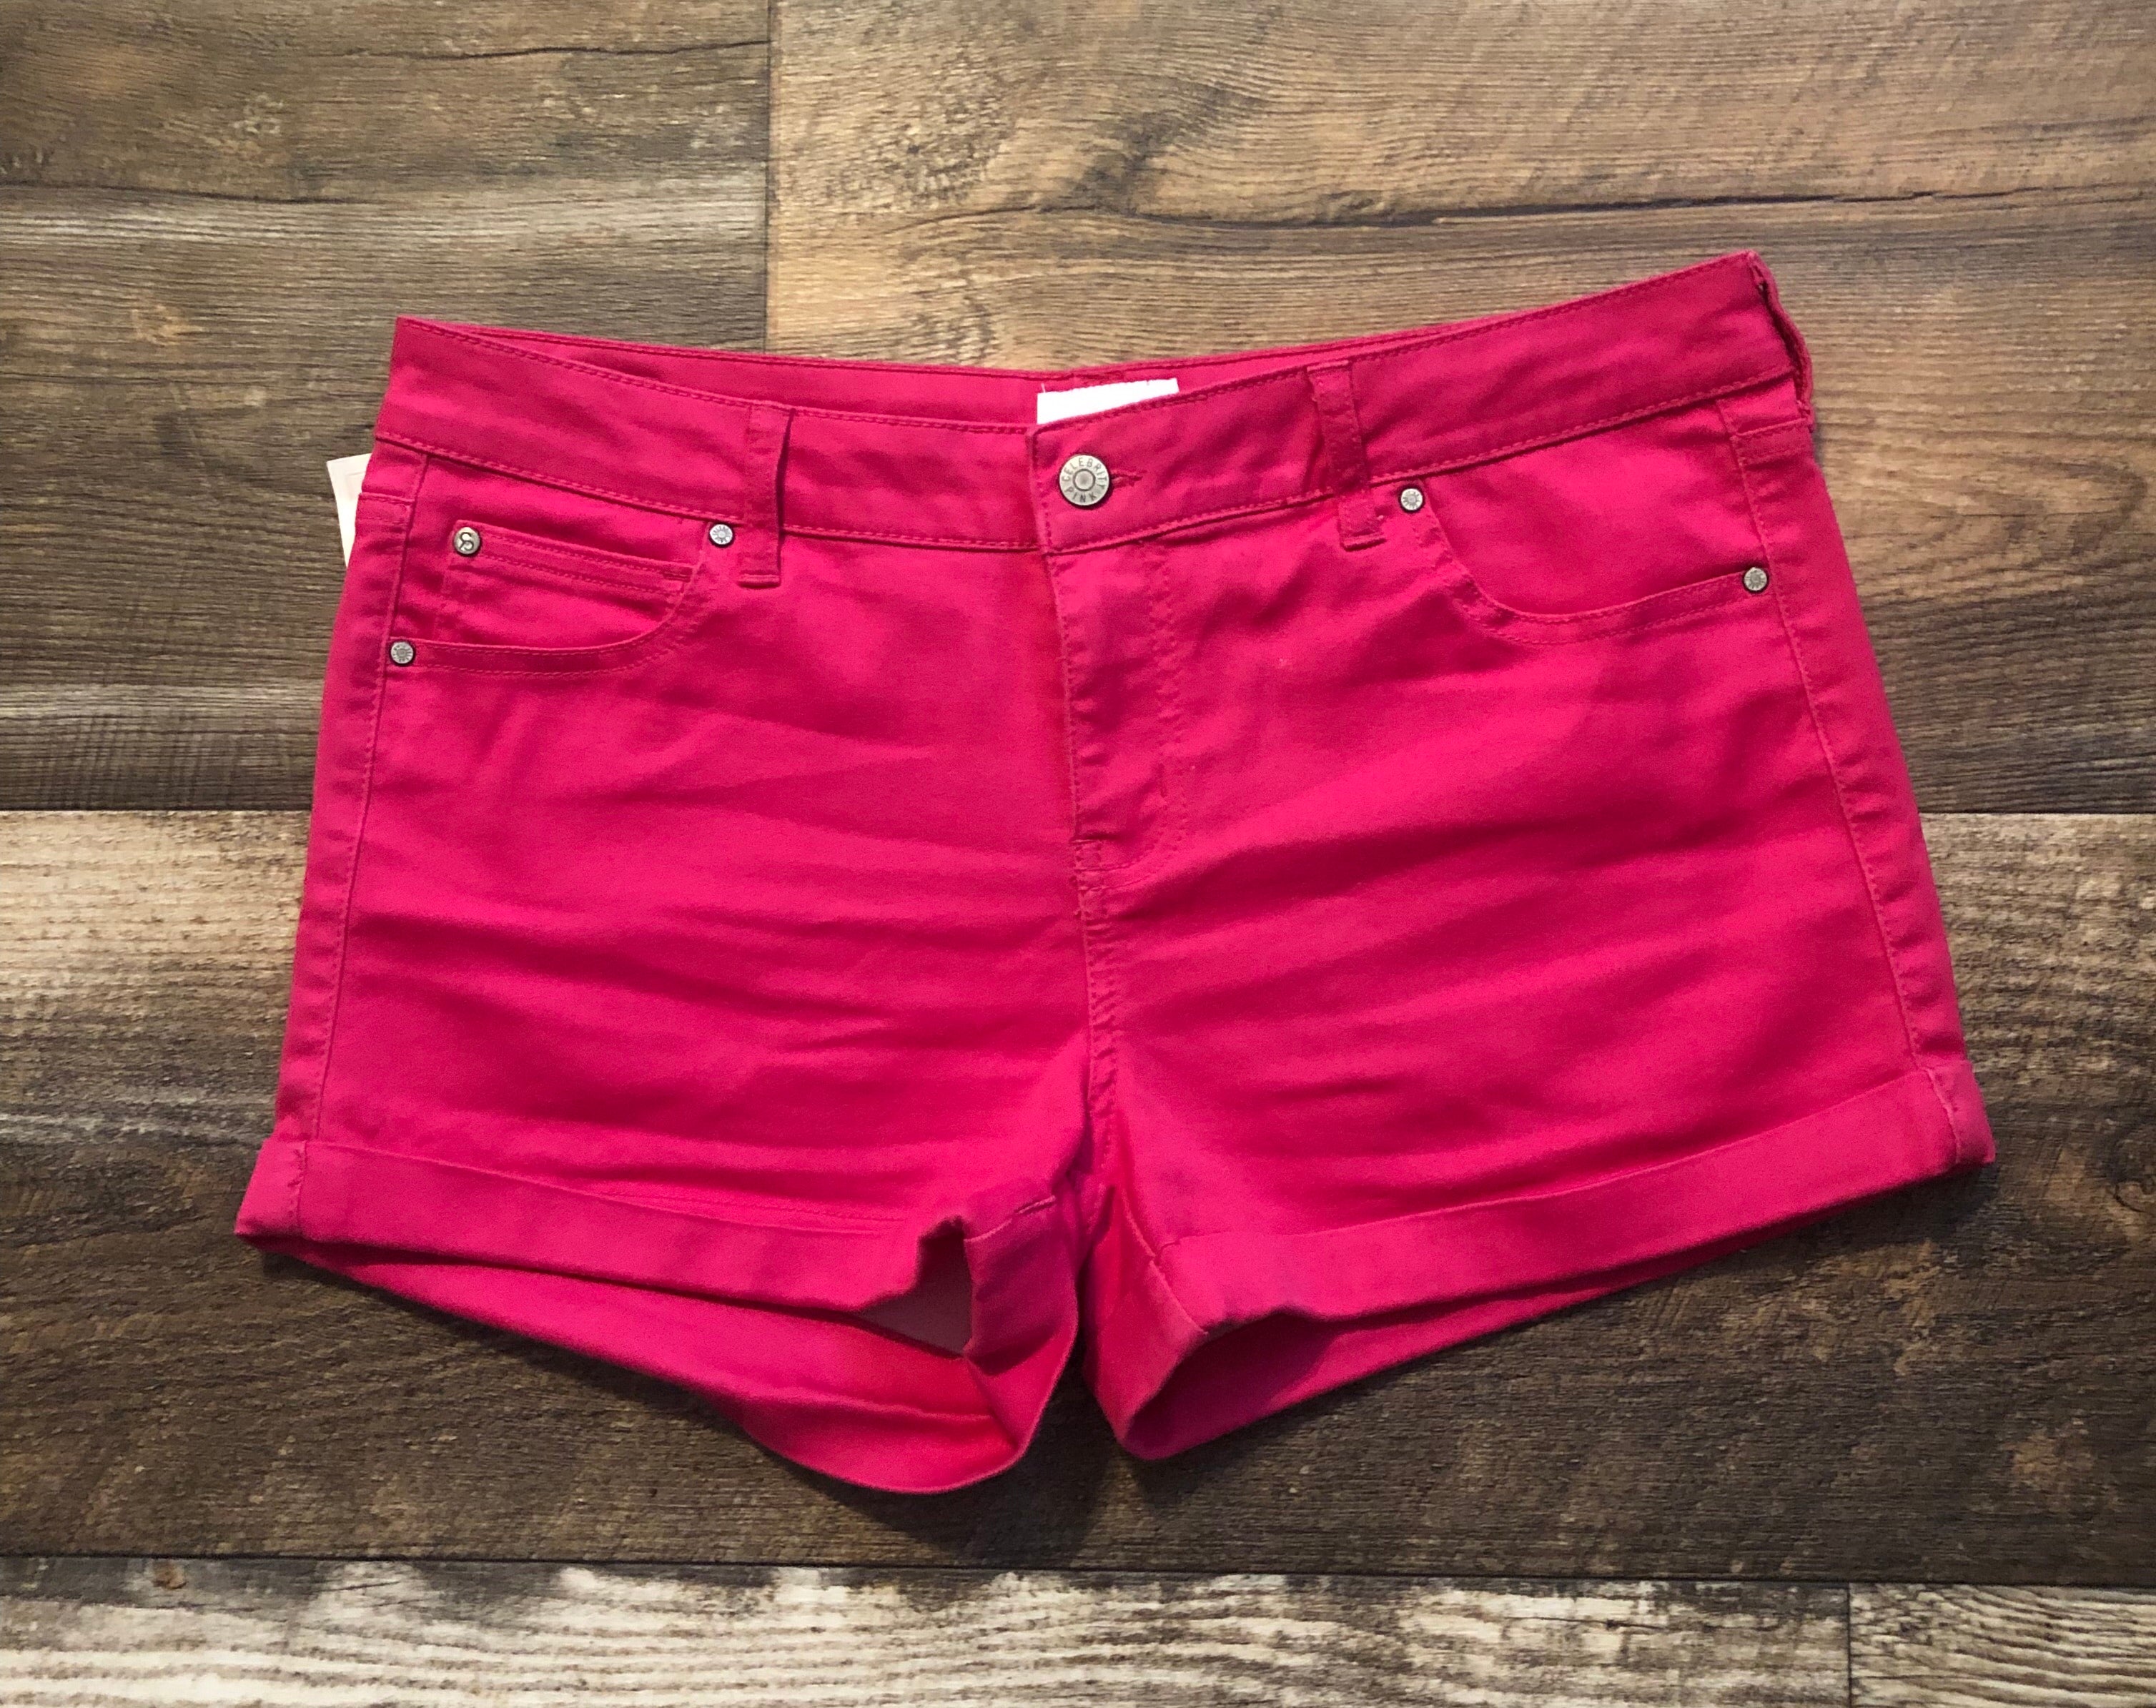 Shorts - Hot Pink (7,9,13)